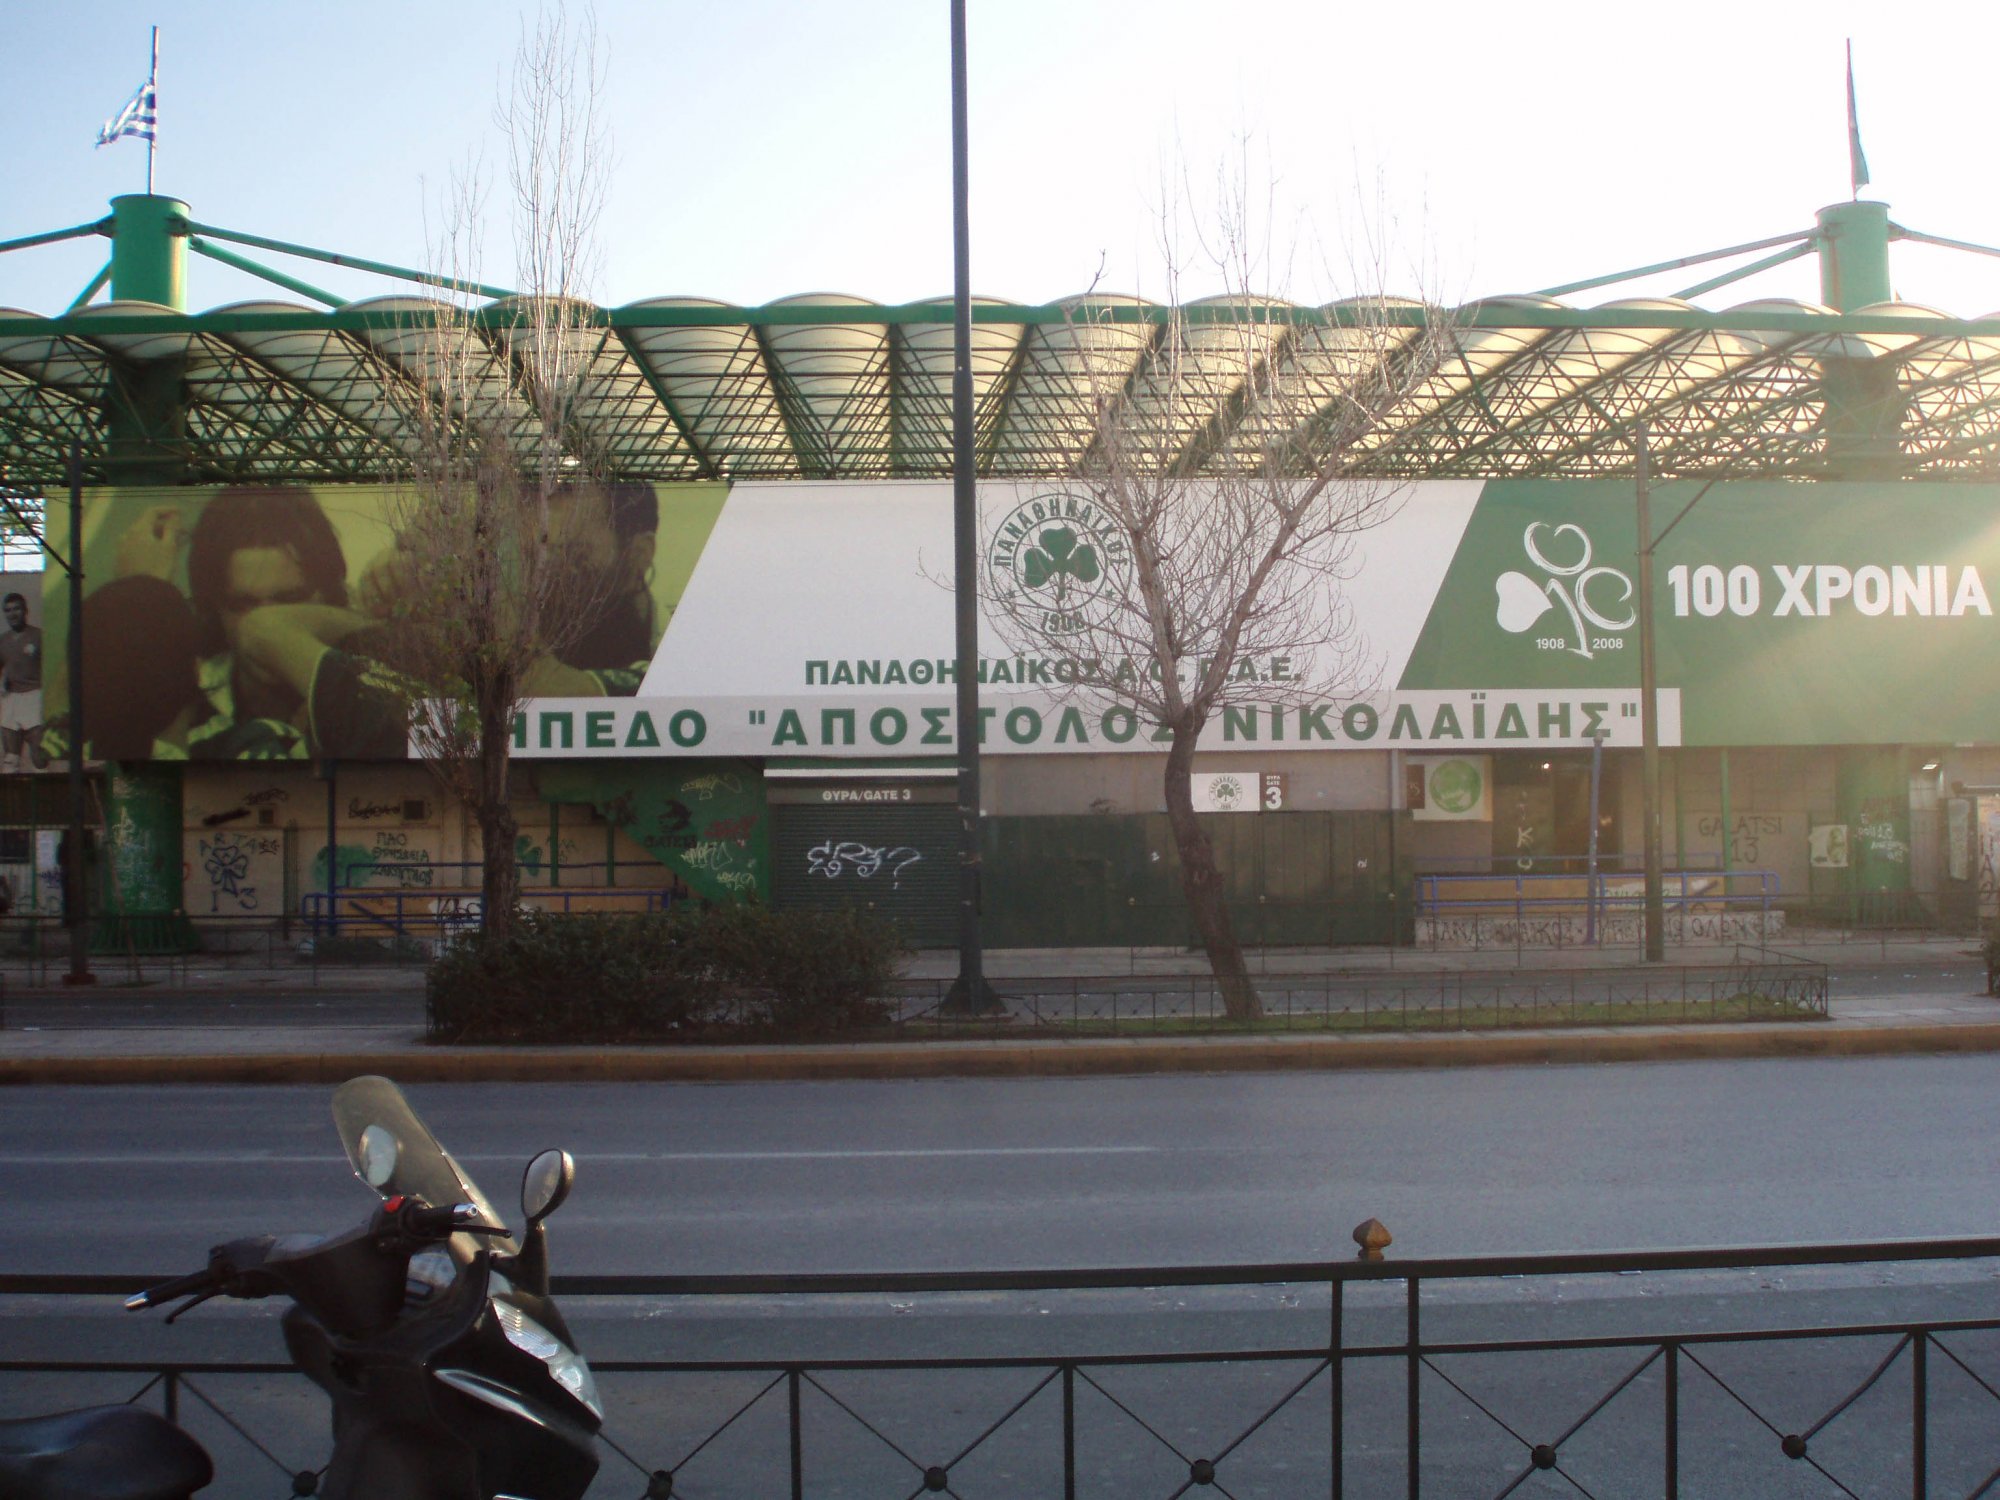 Λεωφόρος Αλεξάνδρας: Συμπλοκή με πυροβολισμούς έξω από το γήπεδο του Παναθηναϊκού